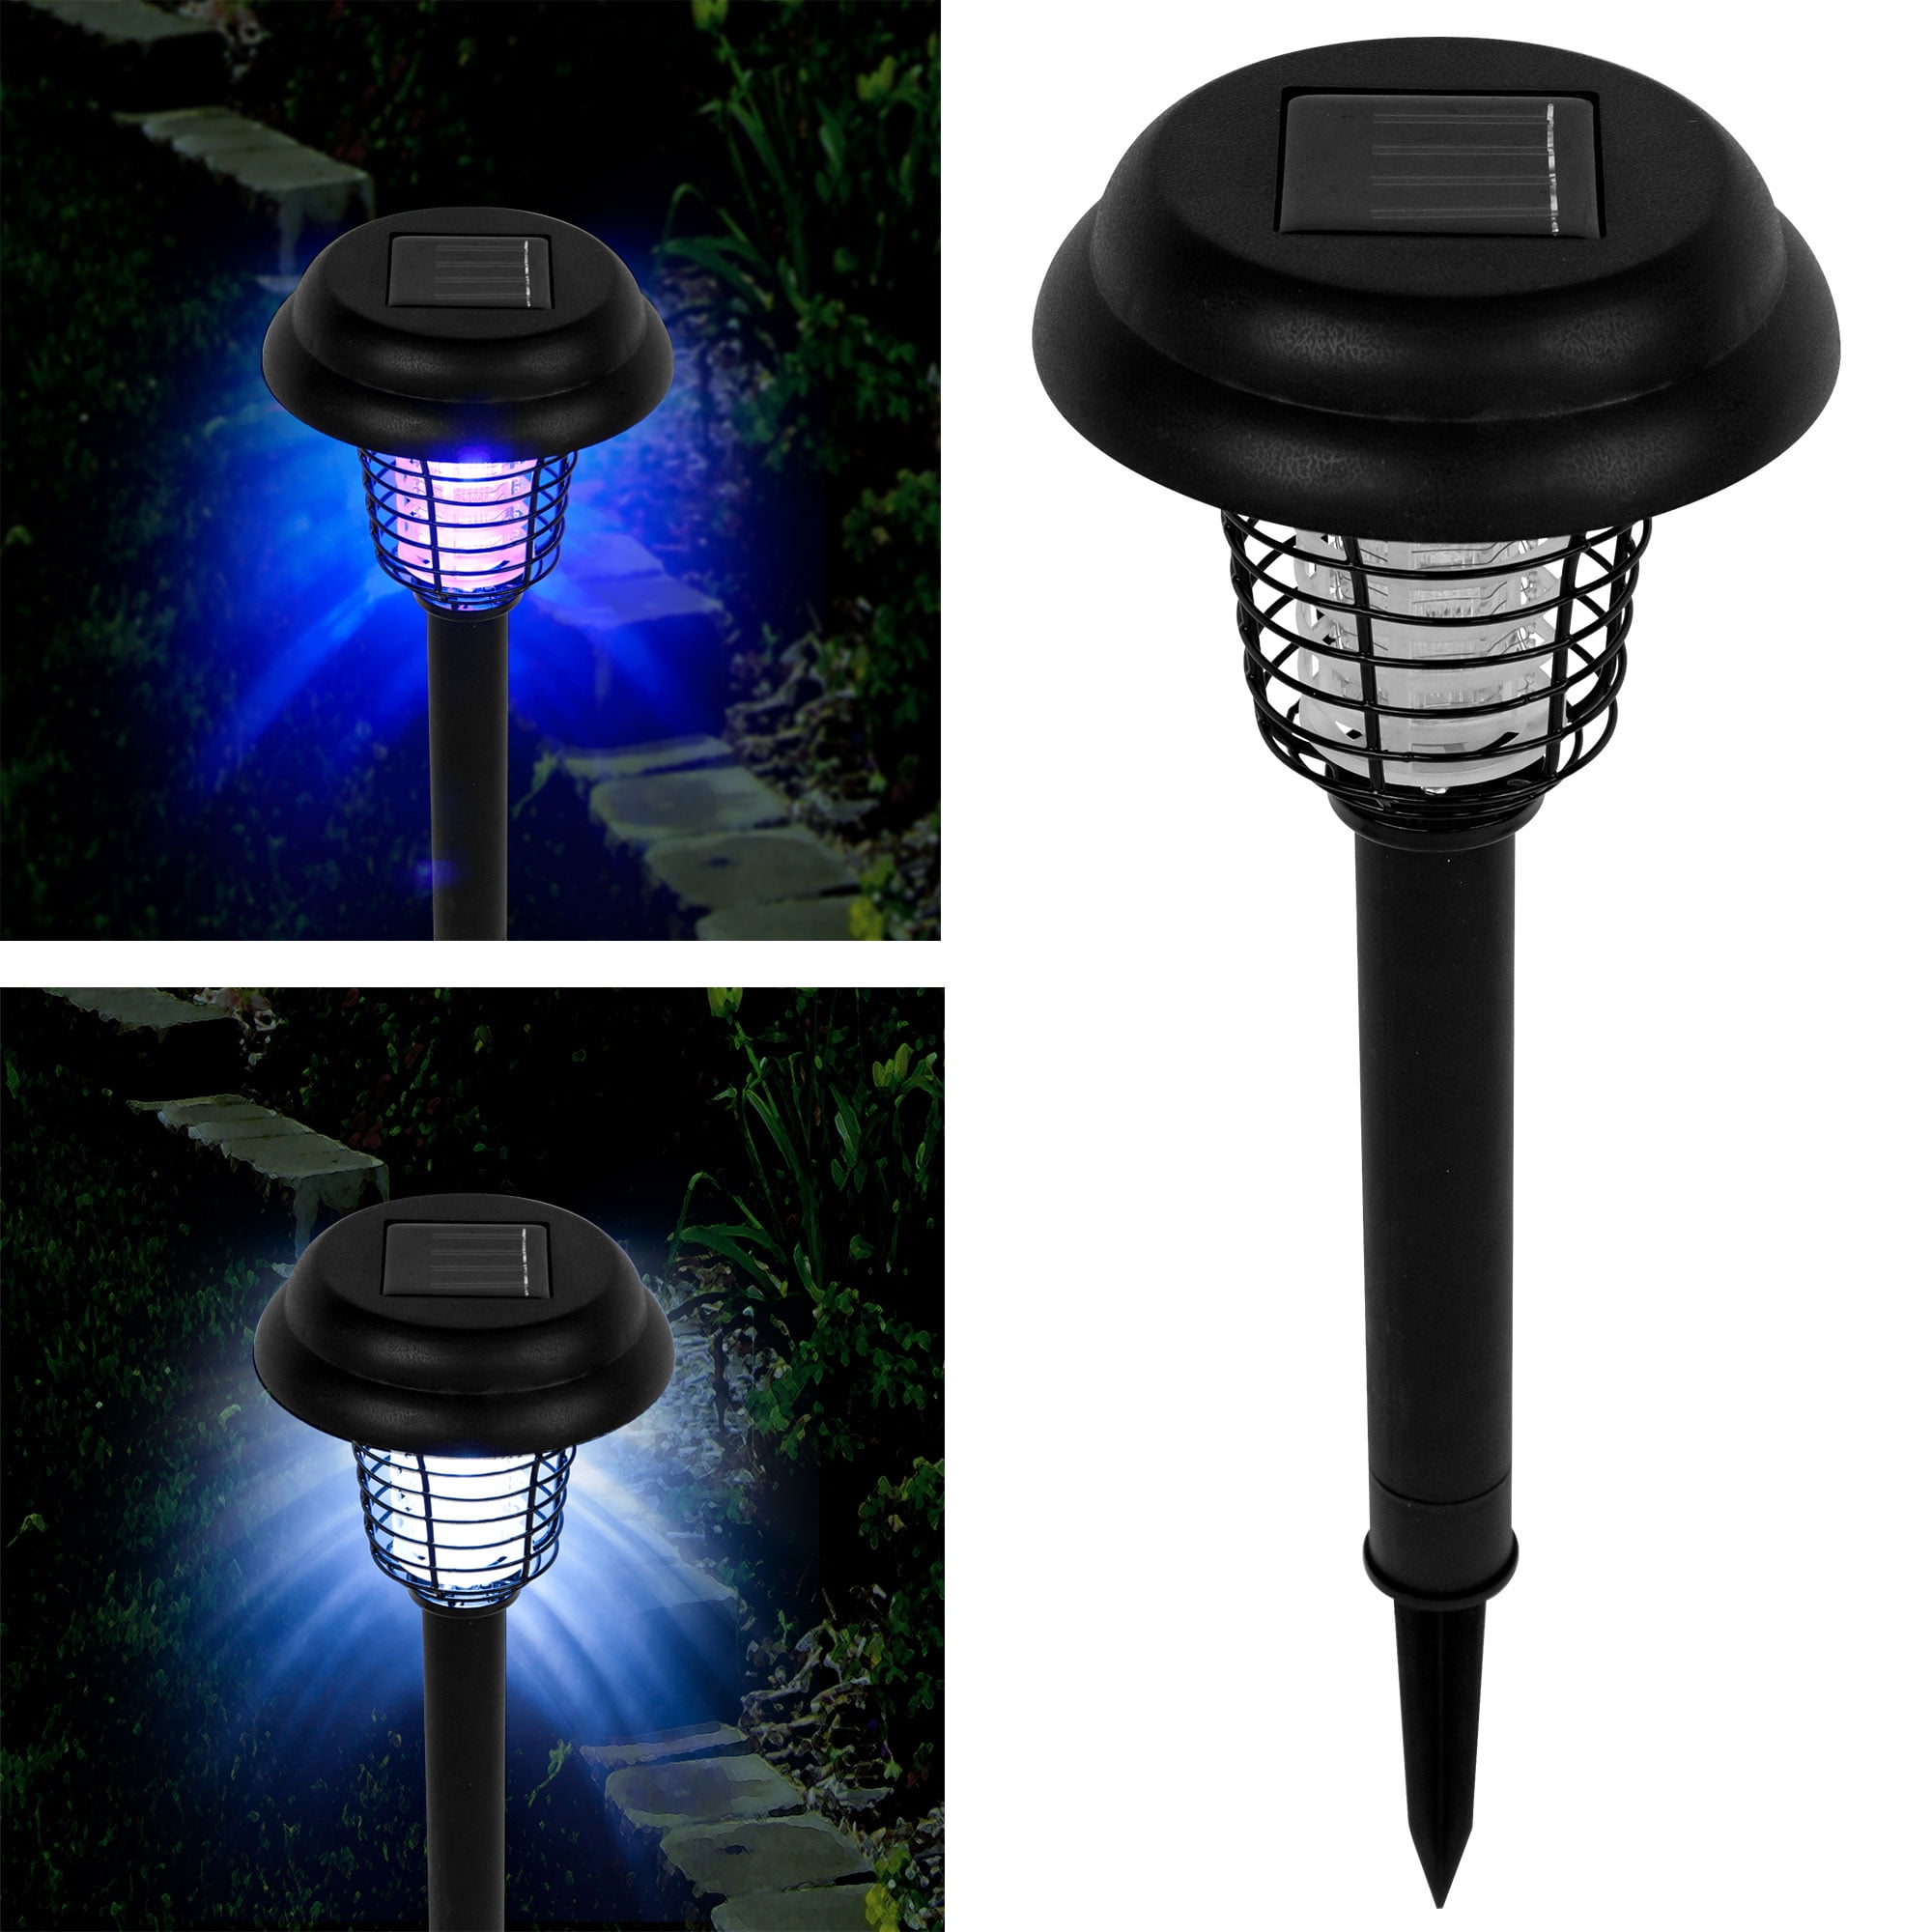 Matte Black GreenLighting Solar Powered UV LED Bug Zapper & Lantern Insect Killer Lamp